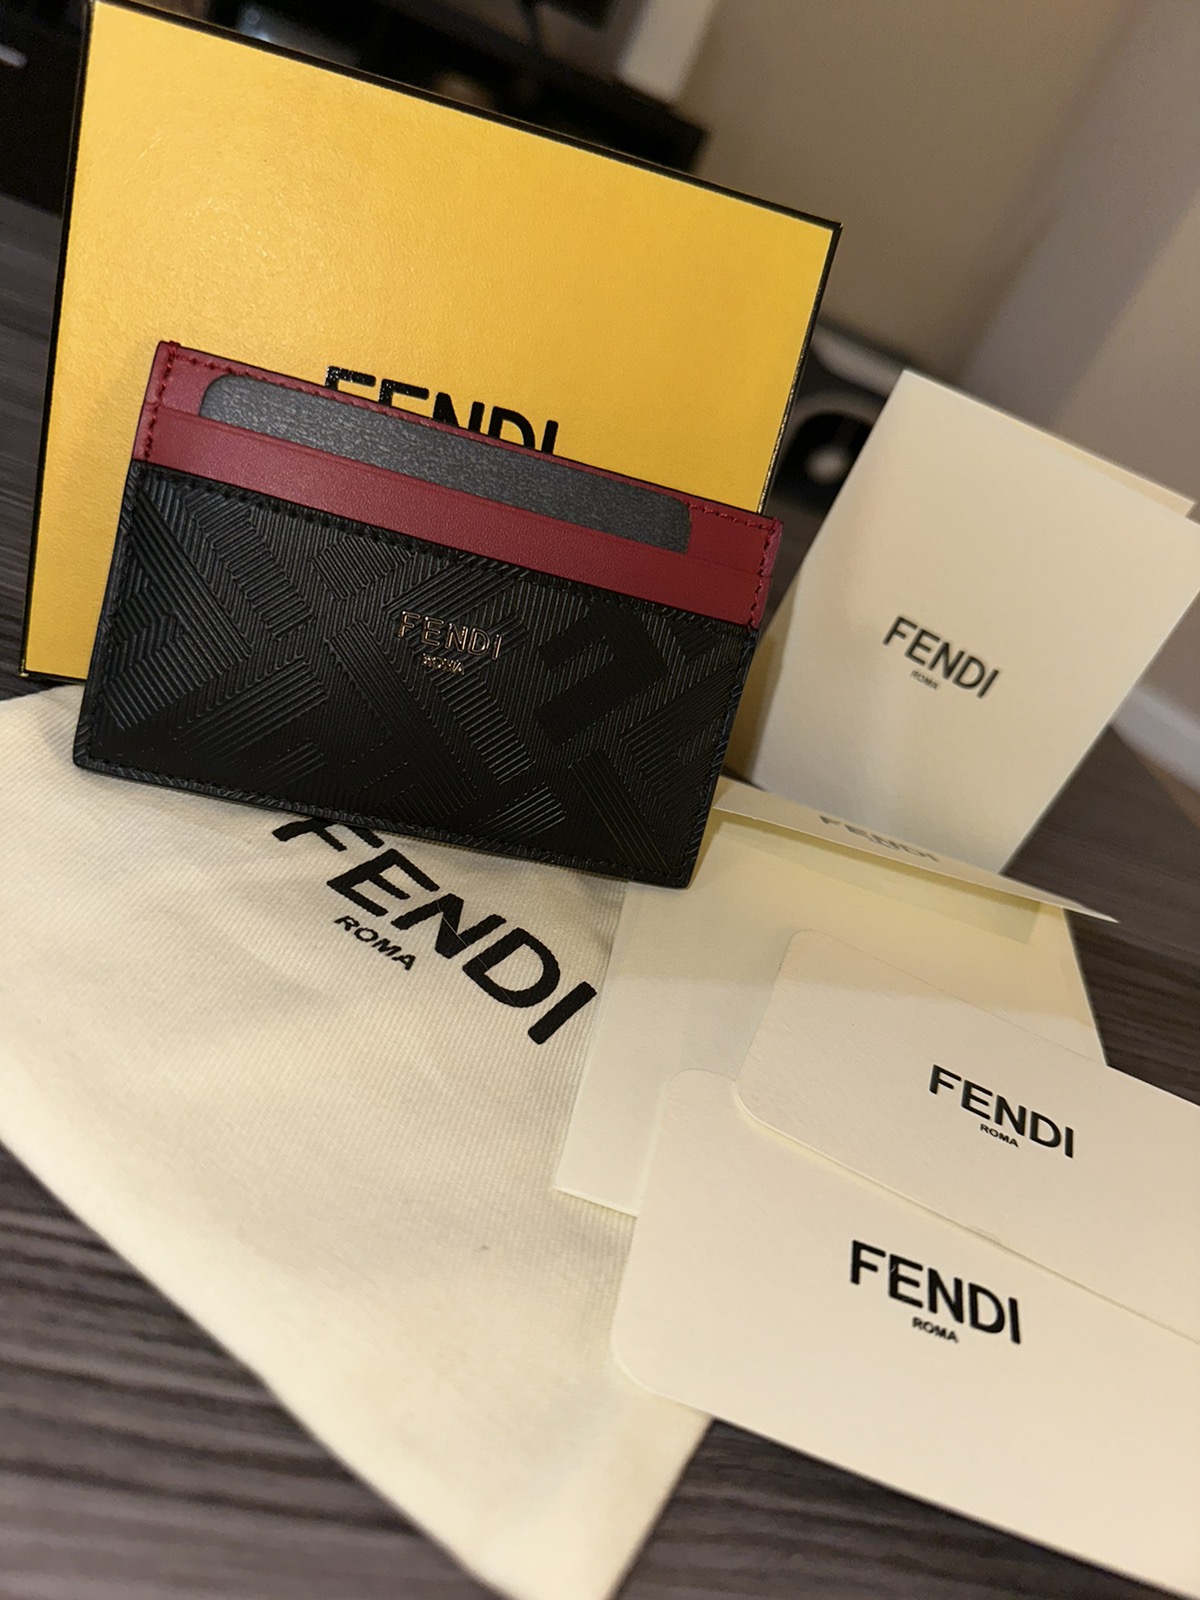 Card Holder - FENDI